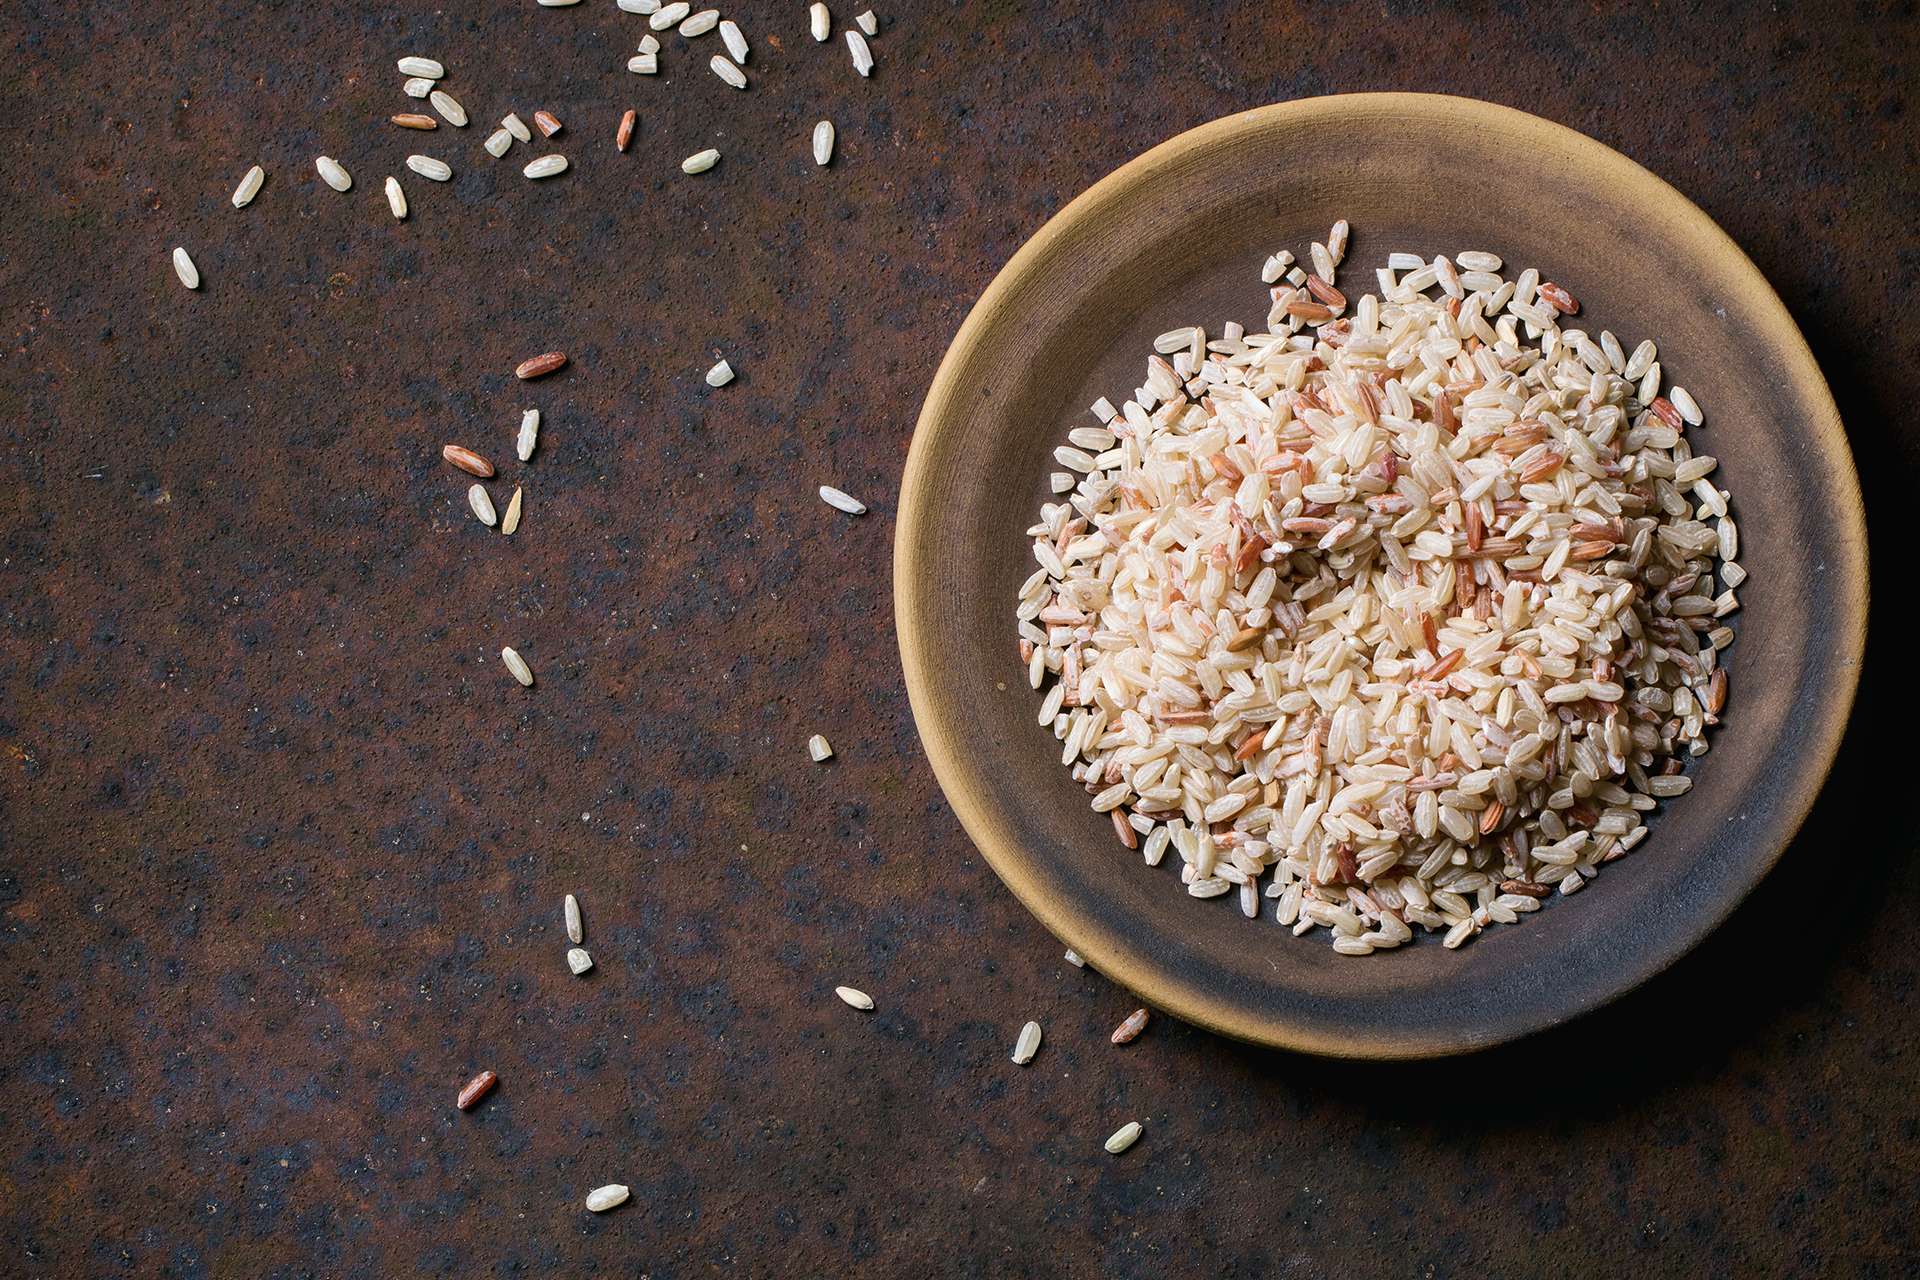 Arrefecimento do arroz durante a cozedura permite obter benefícios deste amido particular